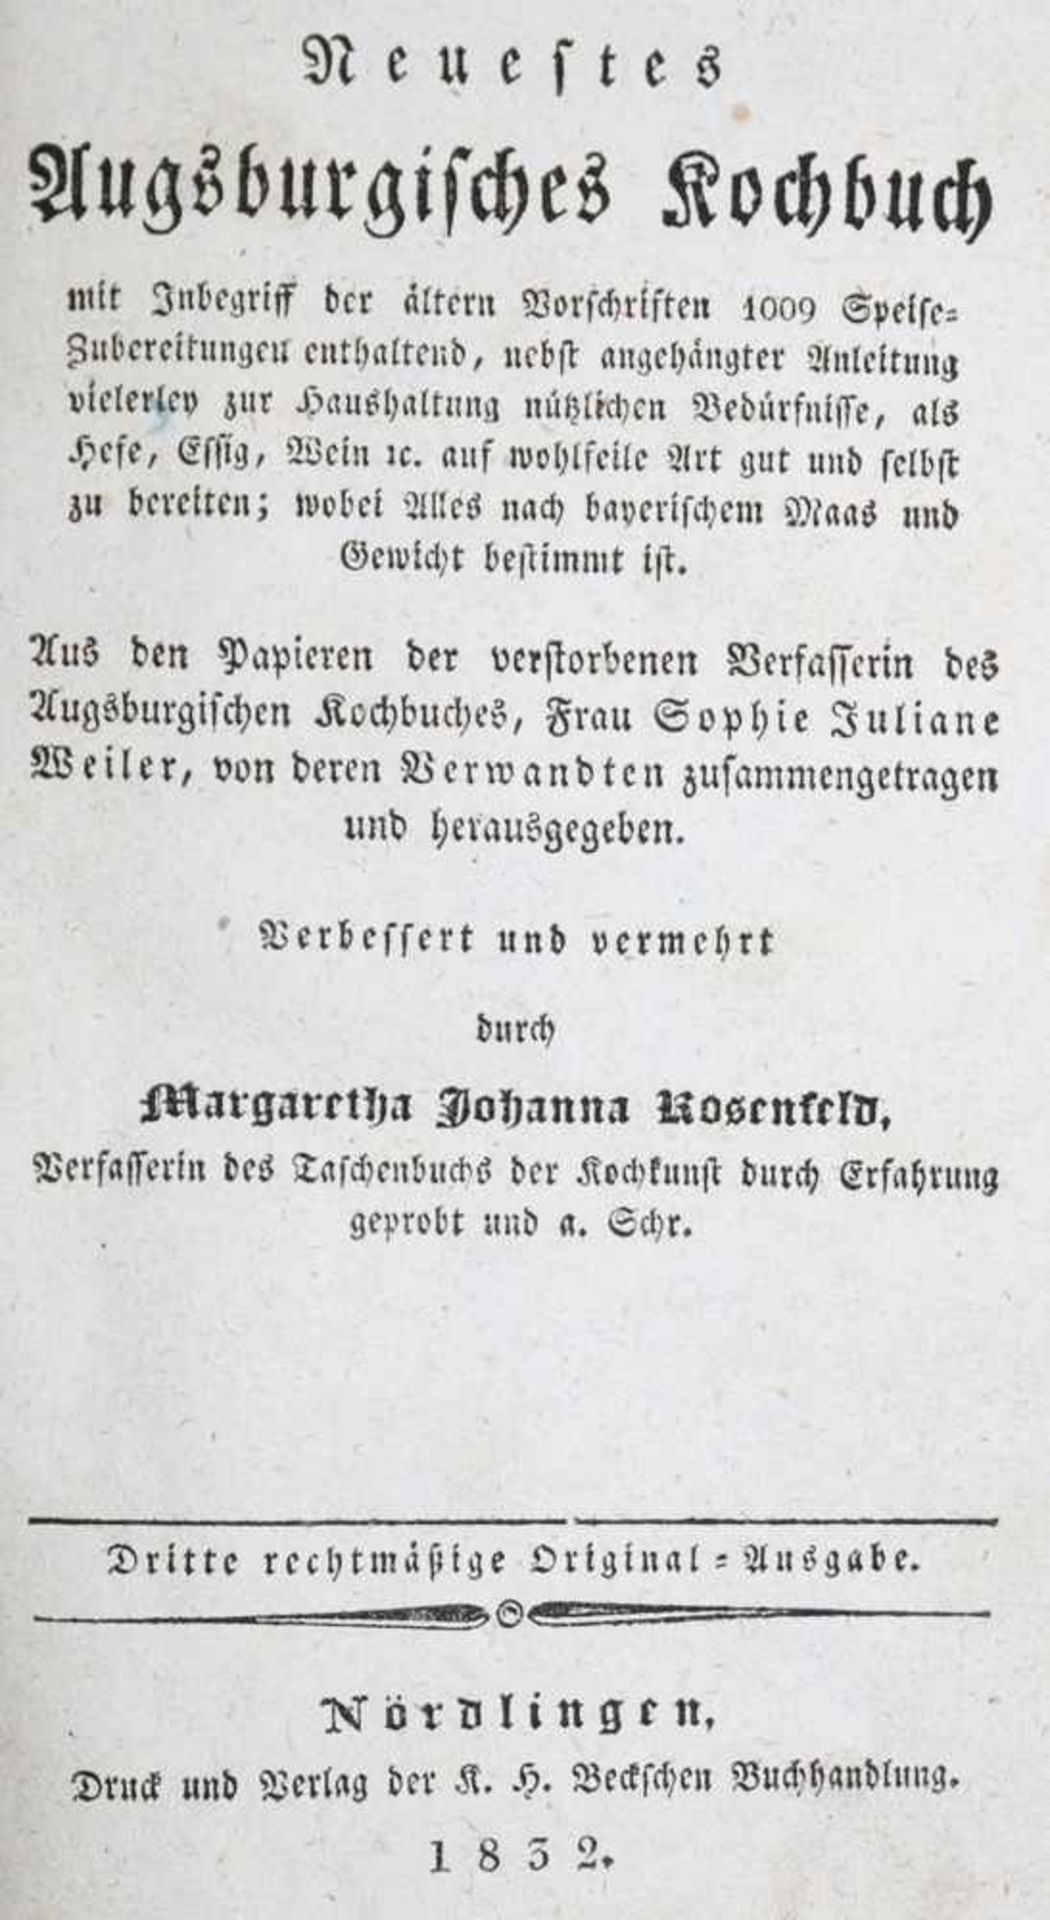 Rosenfeld,M.J.Neuestes Augsburgisches Kochbuch mit Inbegriff der ältern Vorschriften 1009 Speis - Bild 2 aus 2